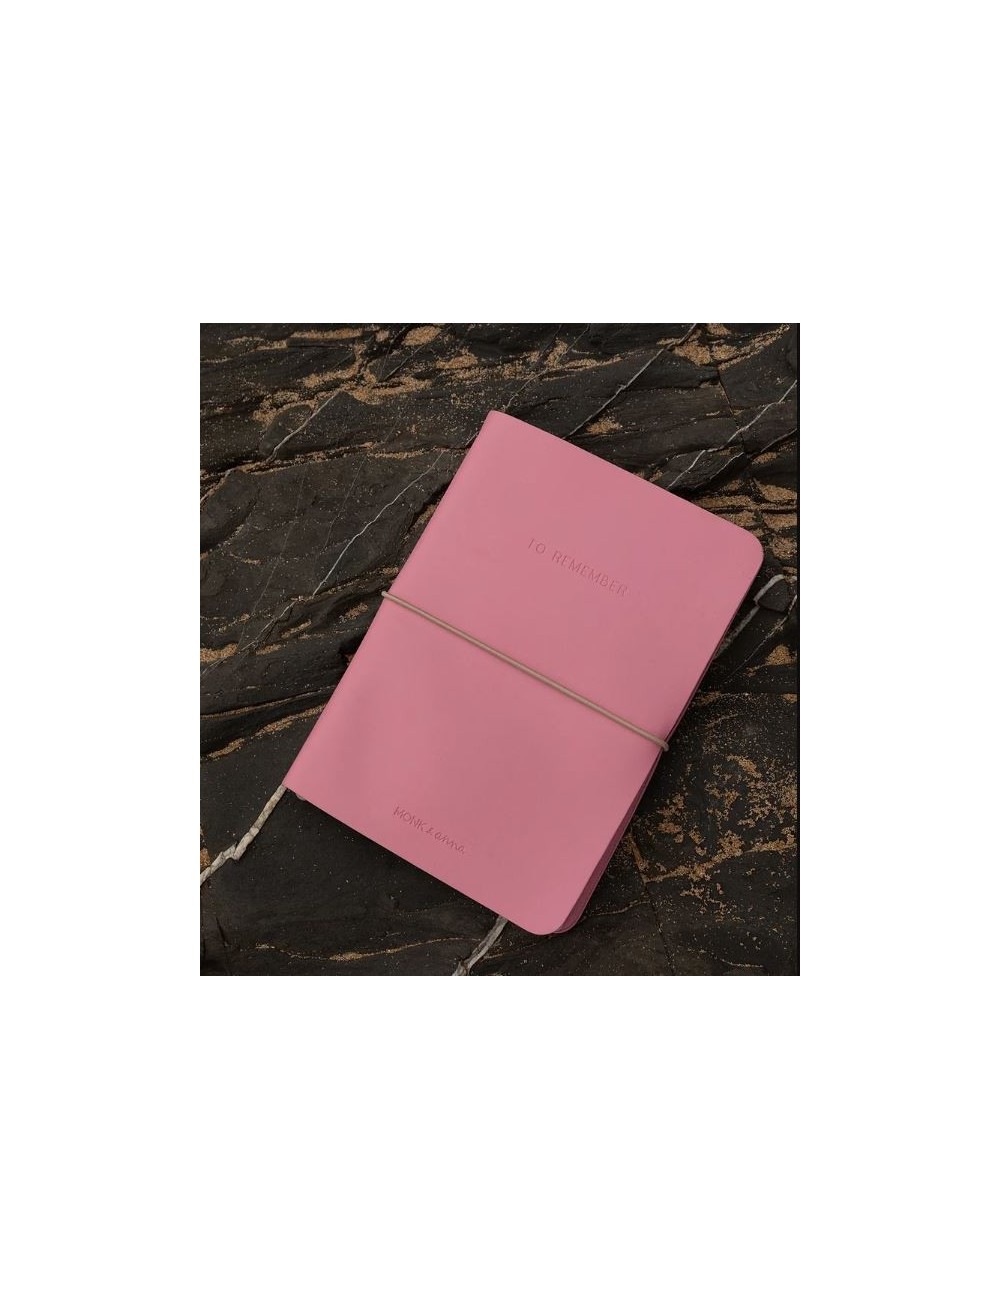 Llibreta rosa de cuir vegà de Monk & Anna